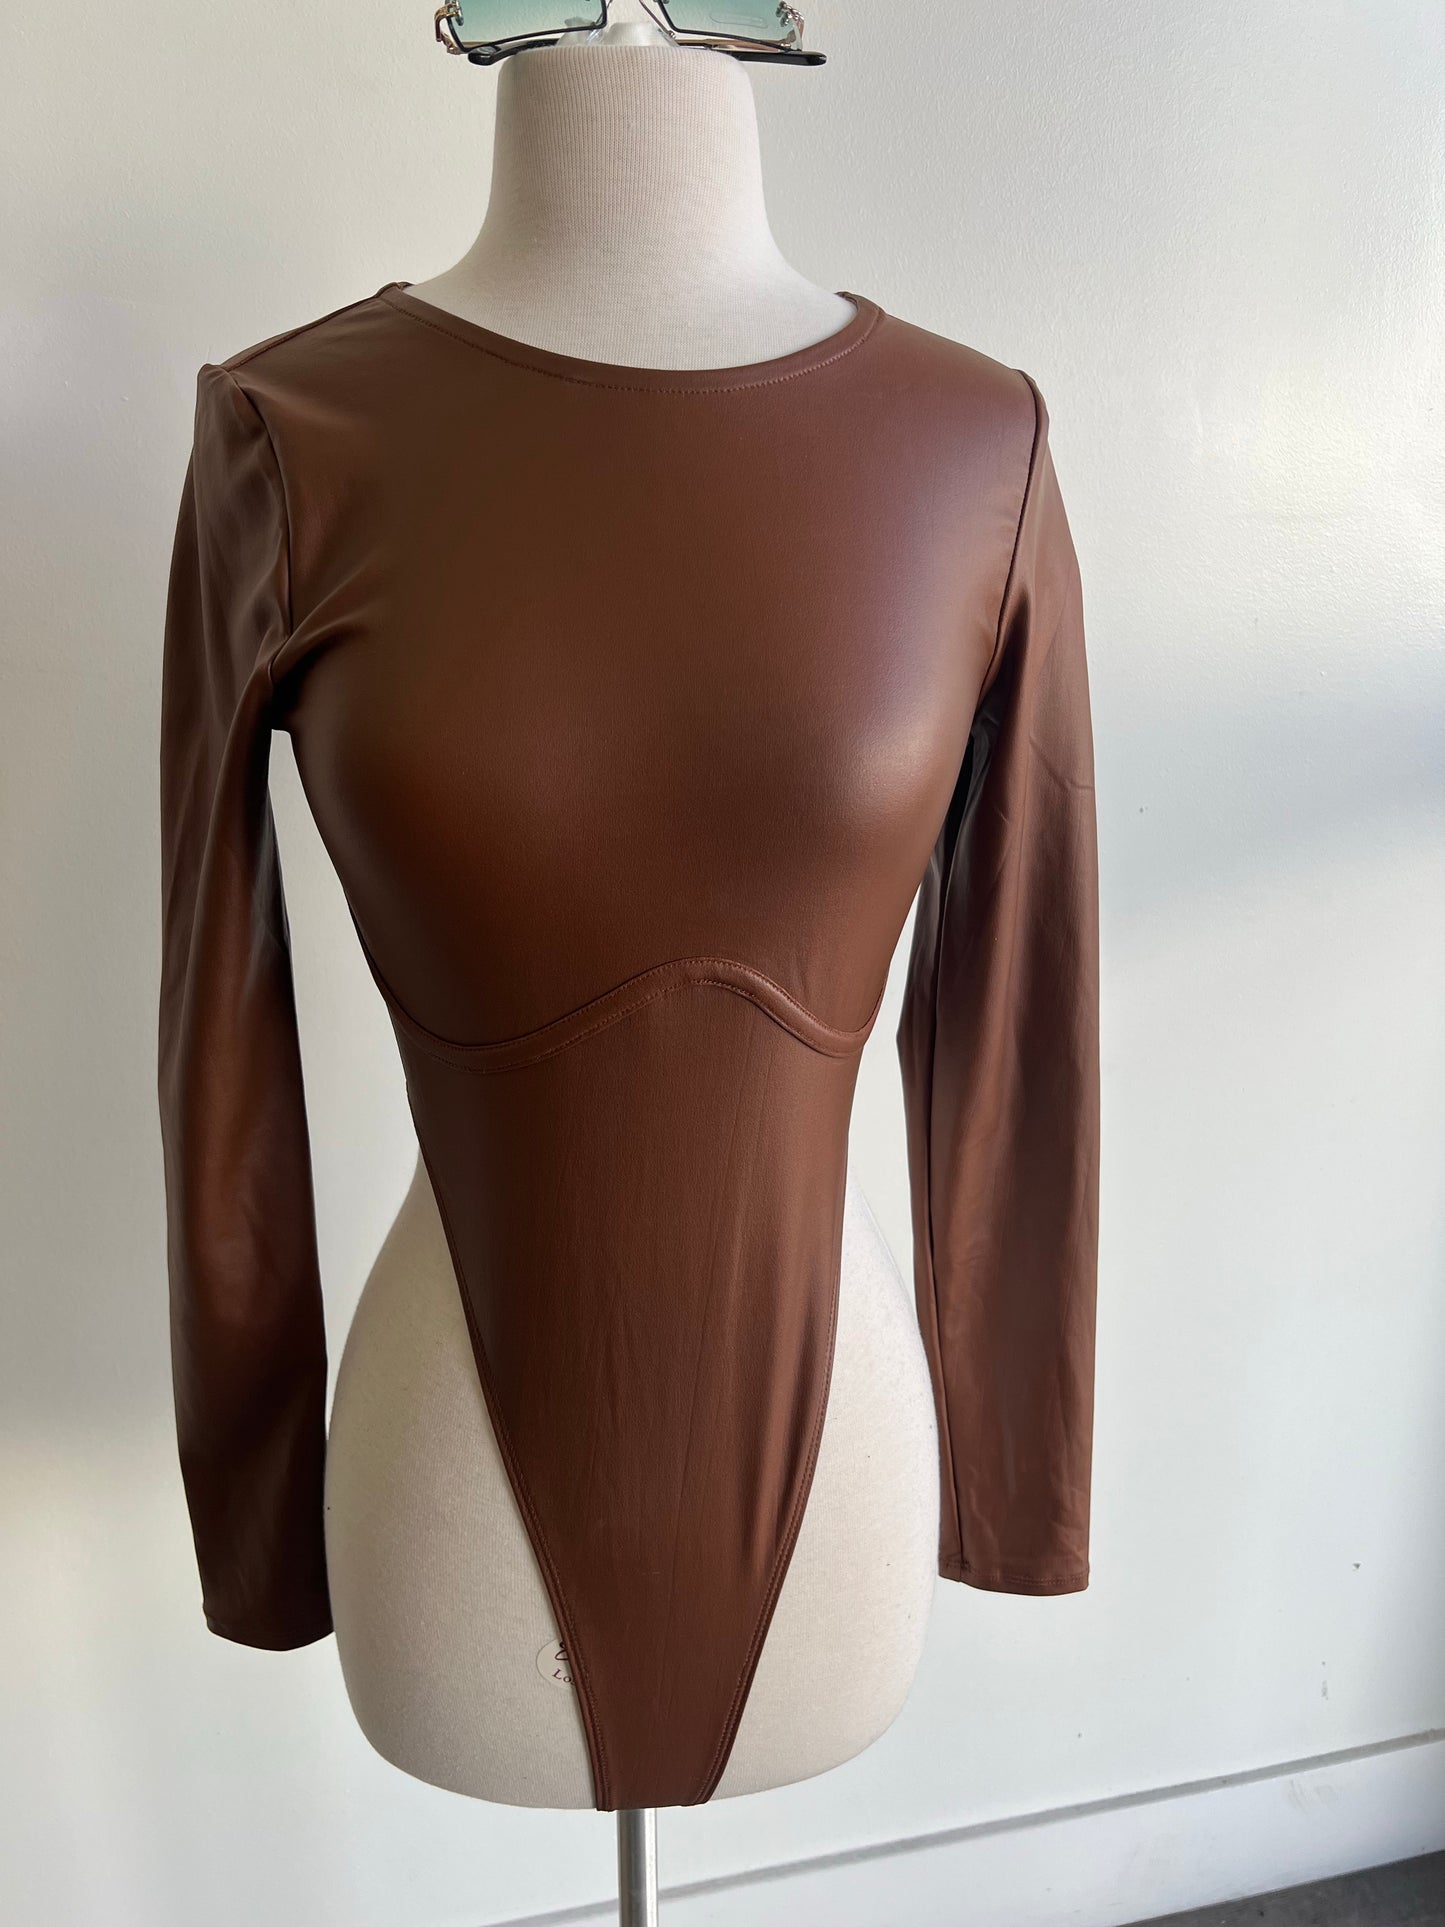 Leather bodysuit